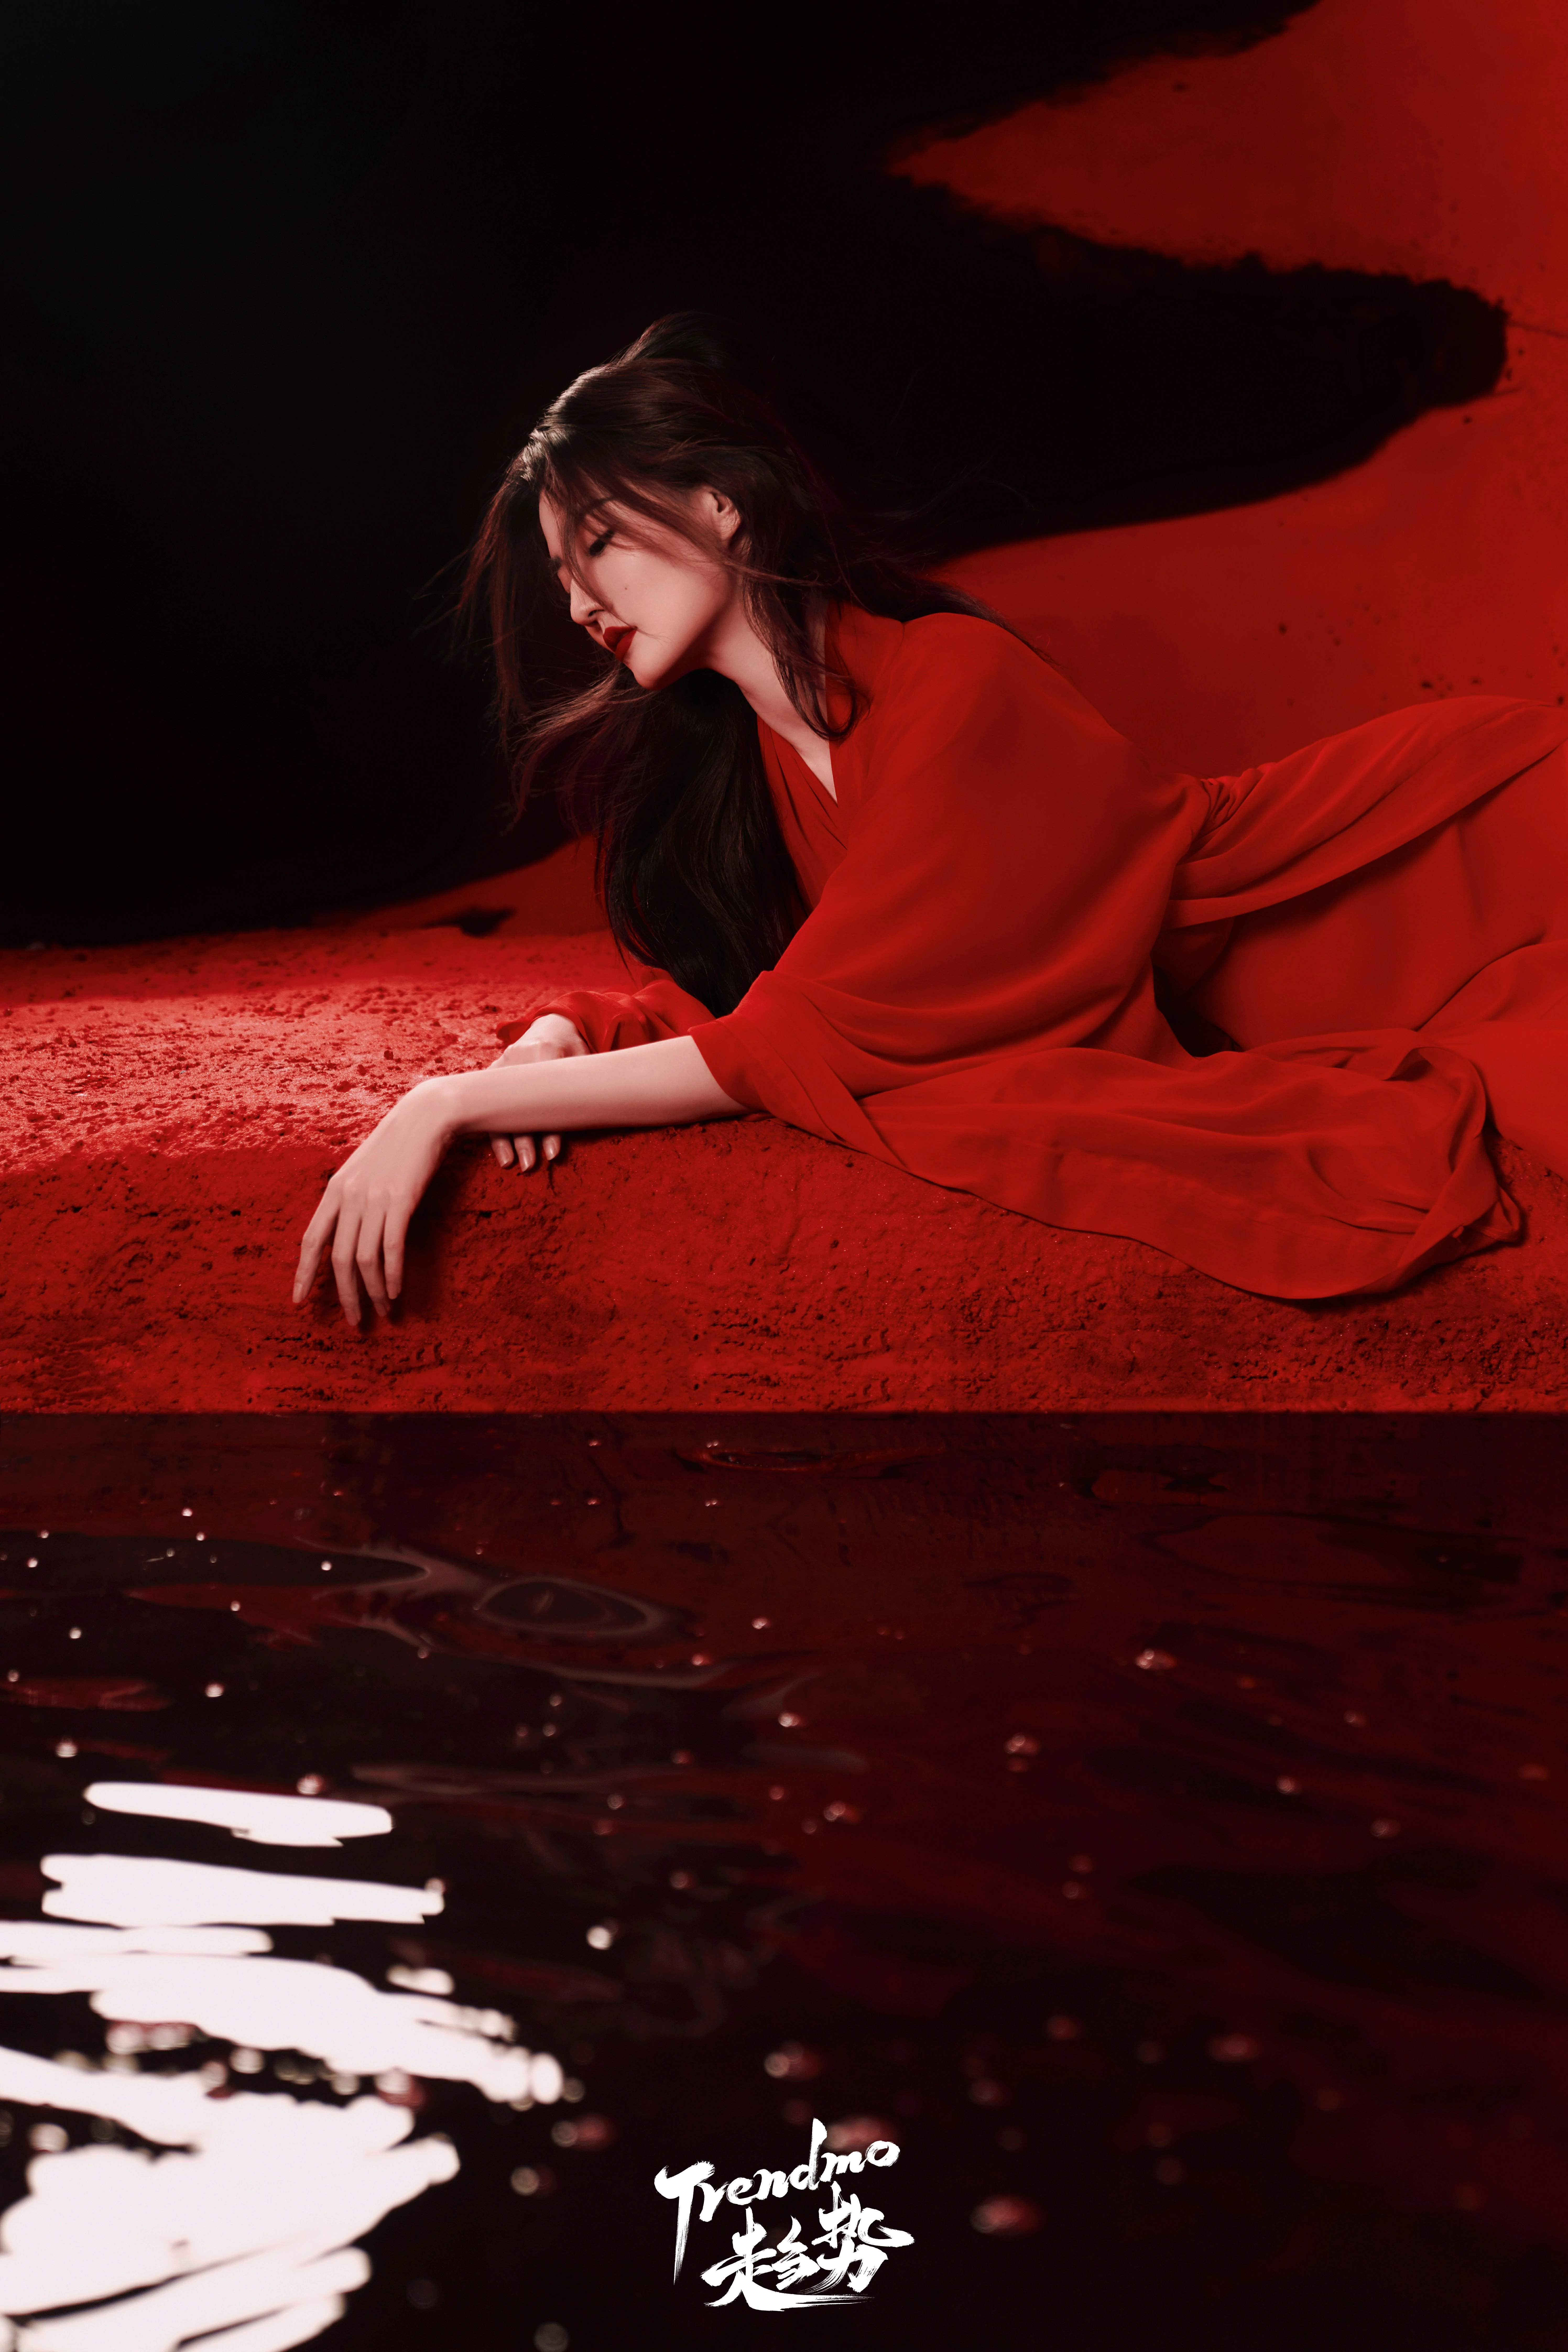 Trendmo趋势徐璐封面大片 红色长裙与黑色西装制服优雅迷人,9